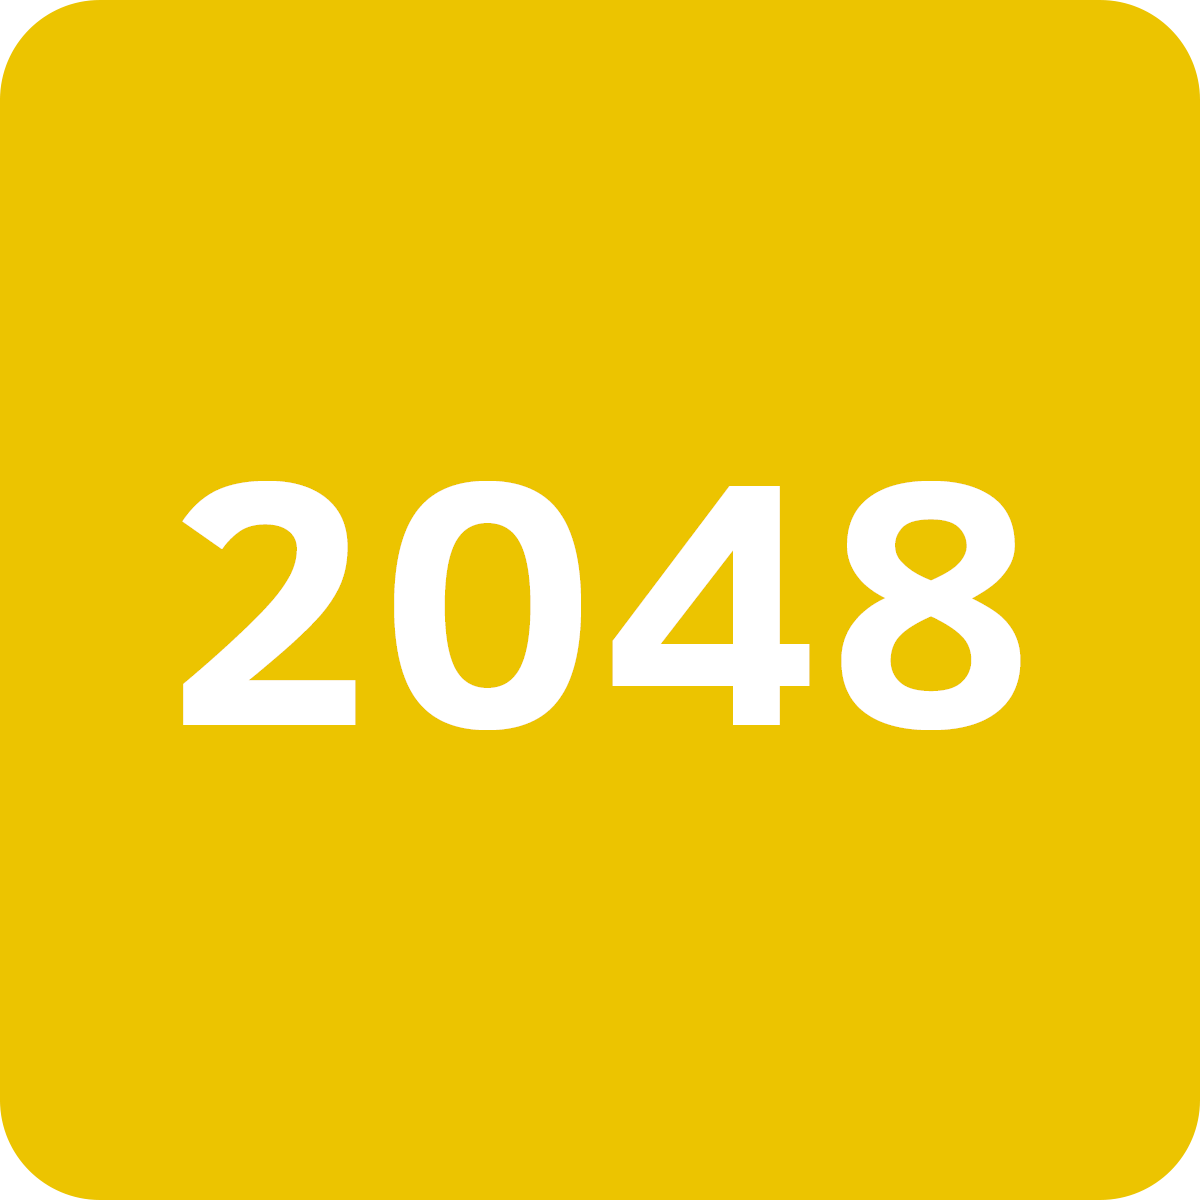 2048 Online